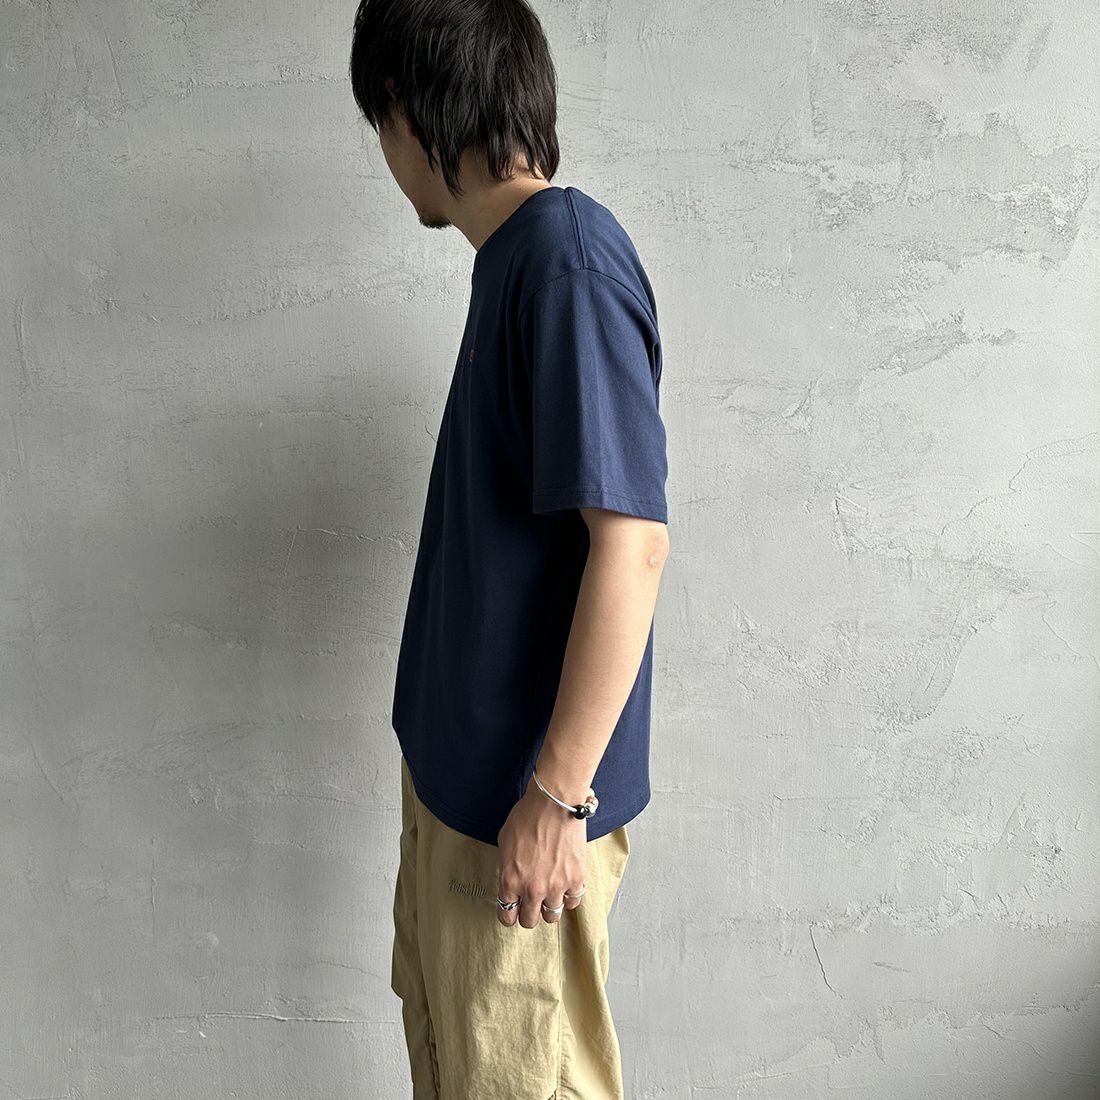 CHUMS [チャムス] ブービーロゴレインボーアイランズTシャツ [CH01-2389] N001 NAVY&&モデル身長：173cm 着用サイズ：L&&